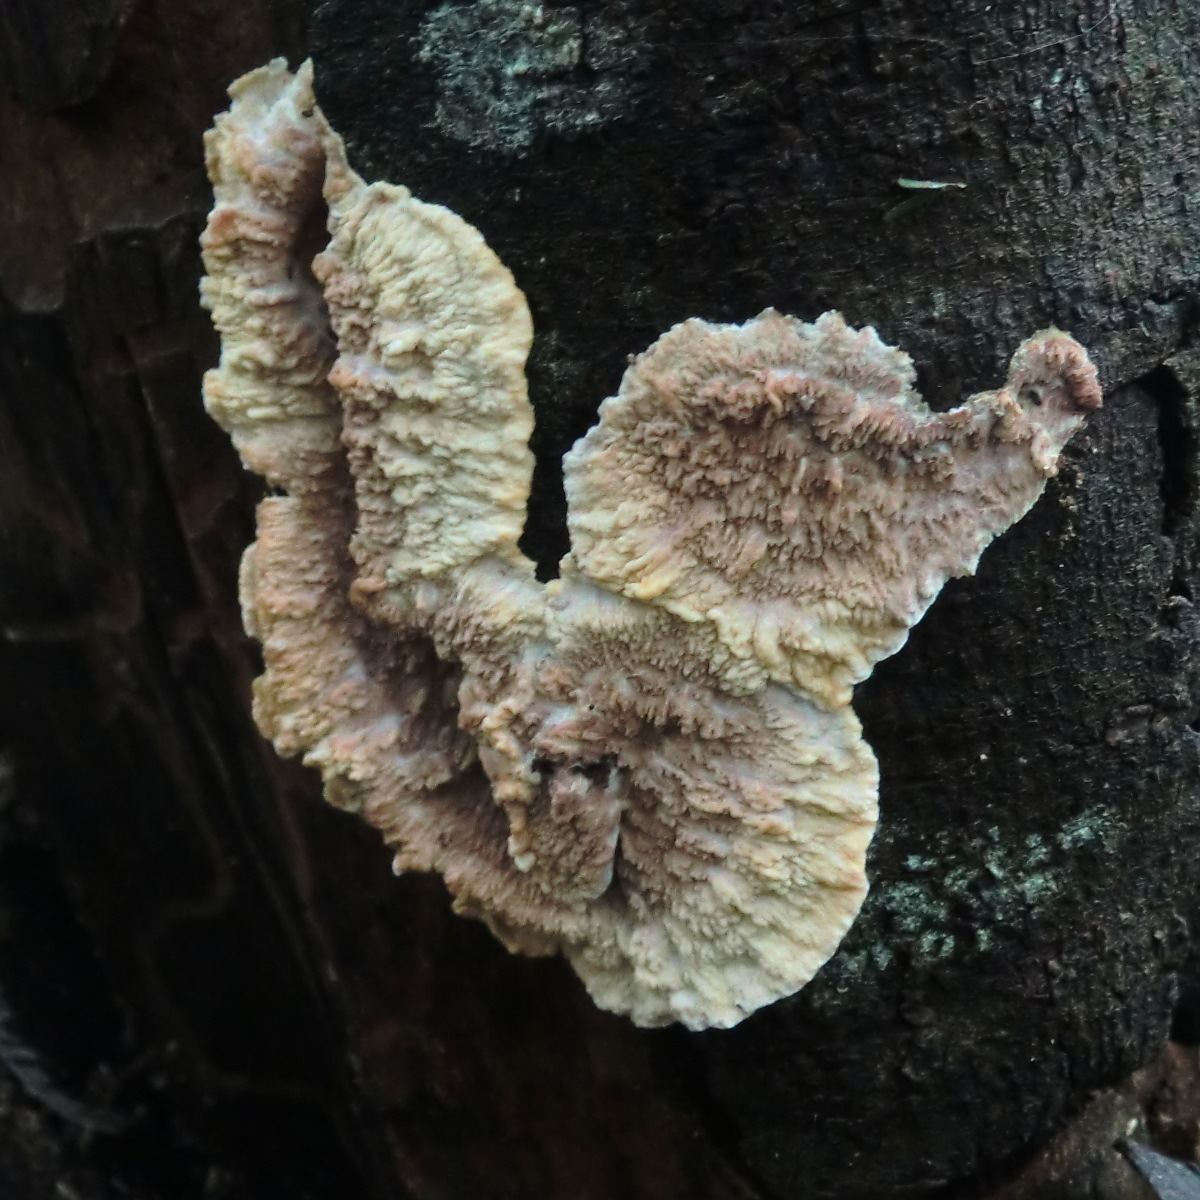 Merulian crust fungus